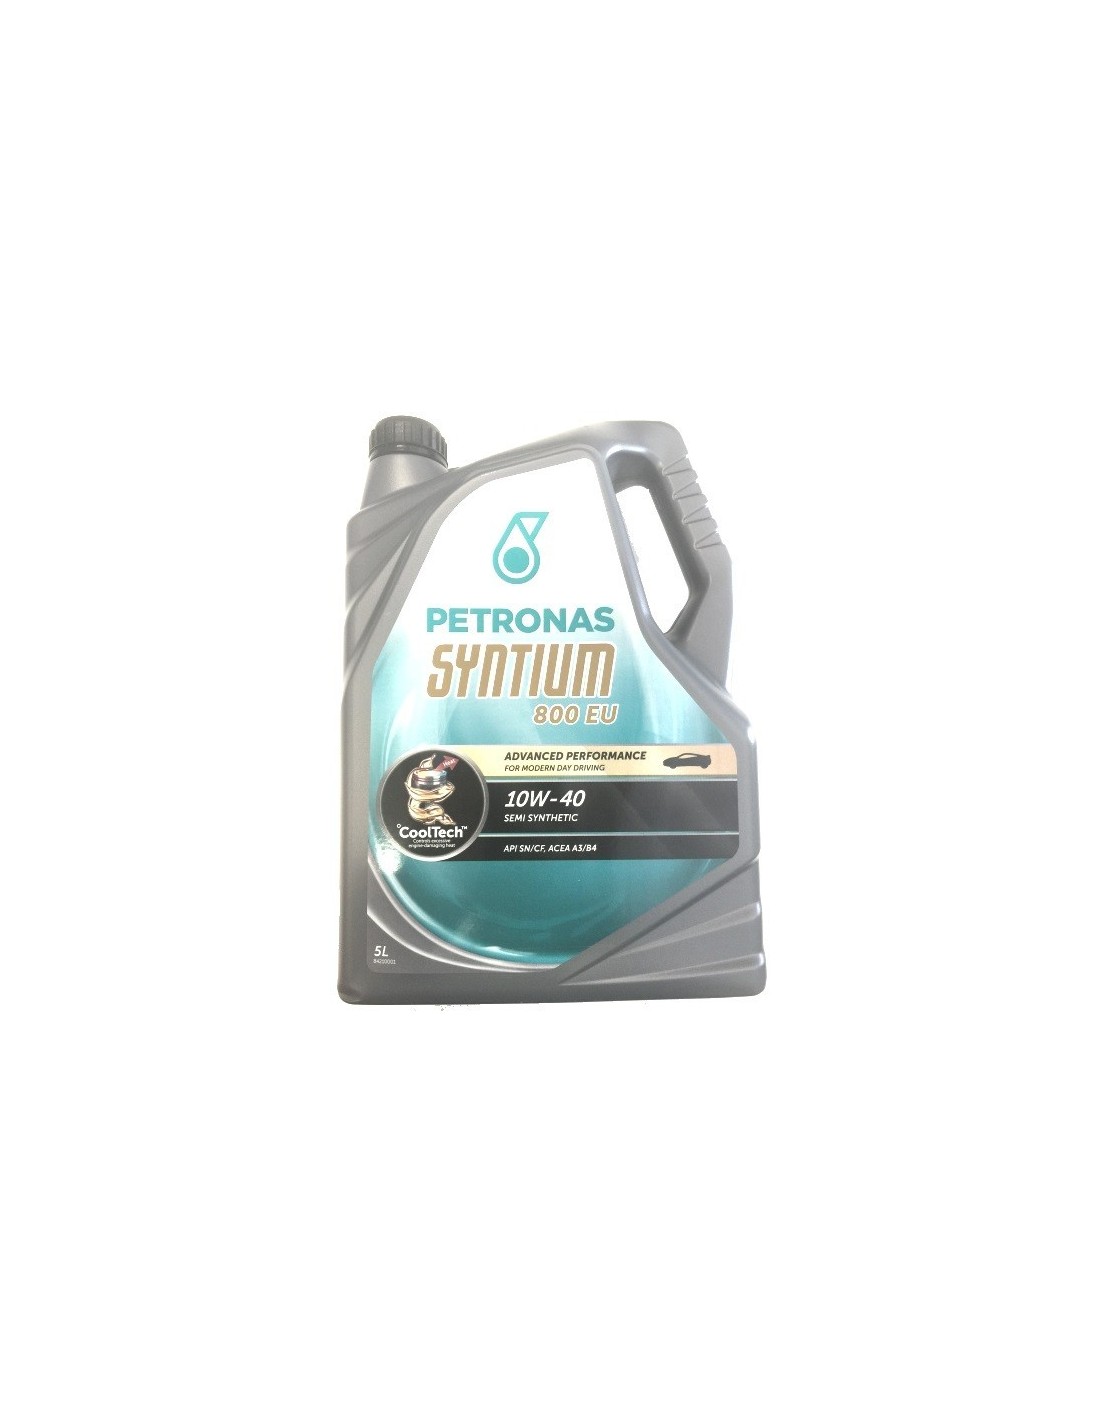 Aceite Petronas Syntium 800 EU 10W40 5 L  20,90 €  www.recambium.com